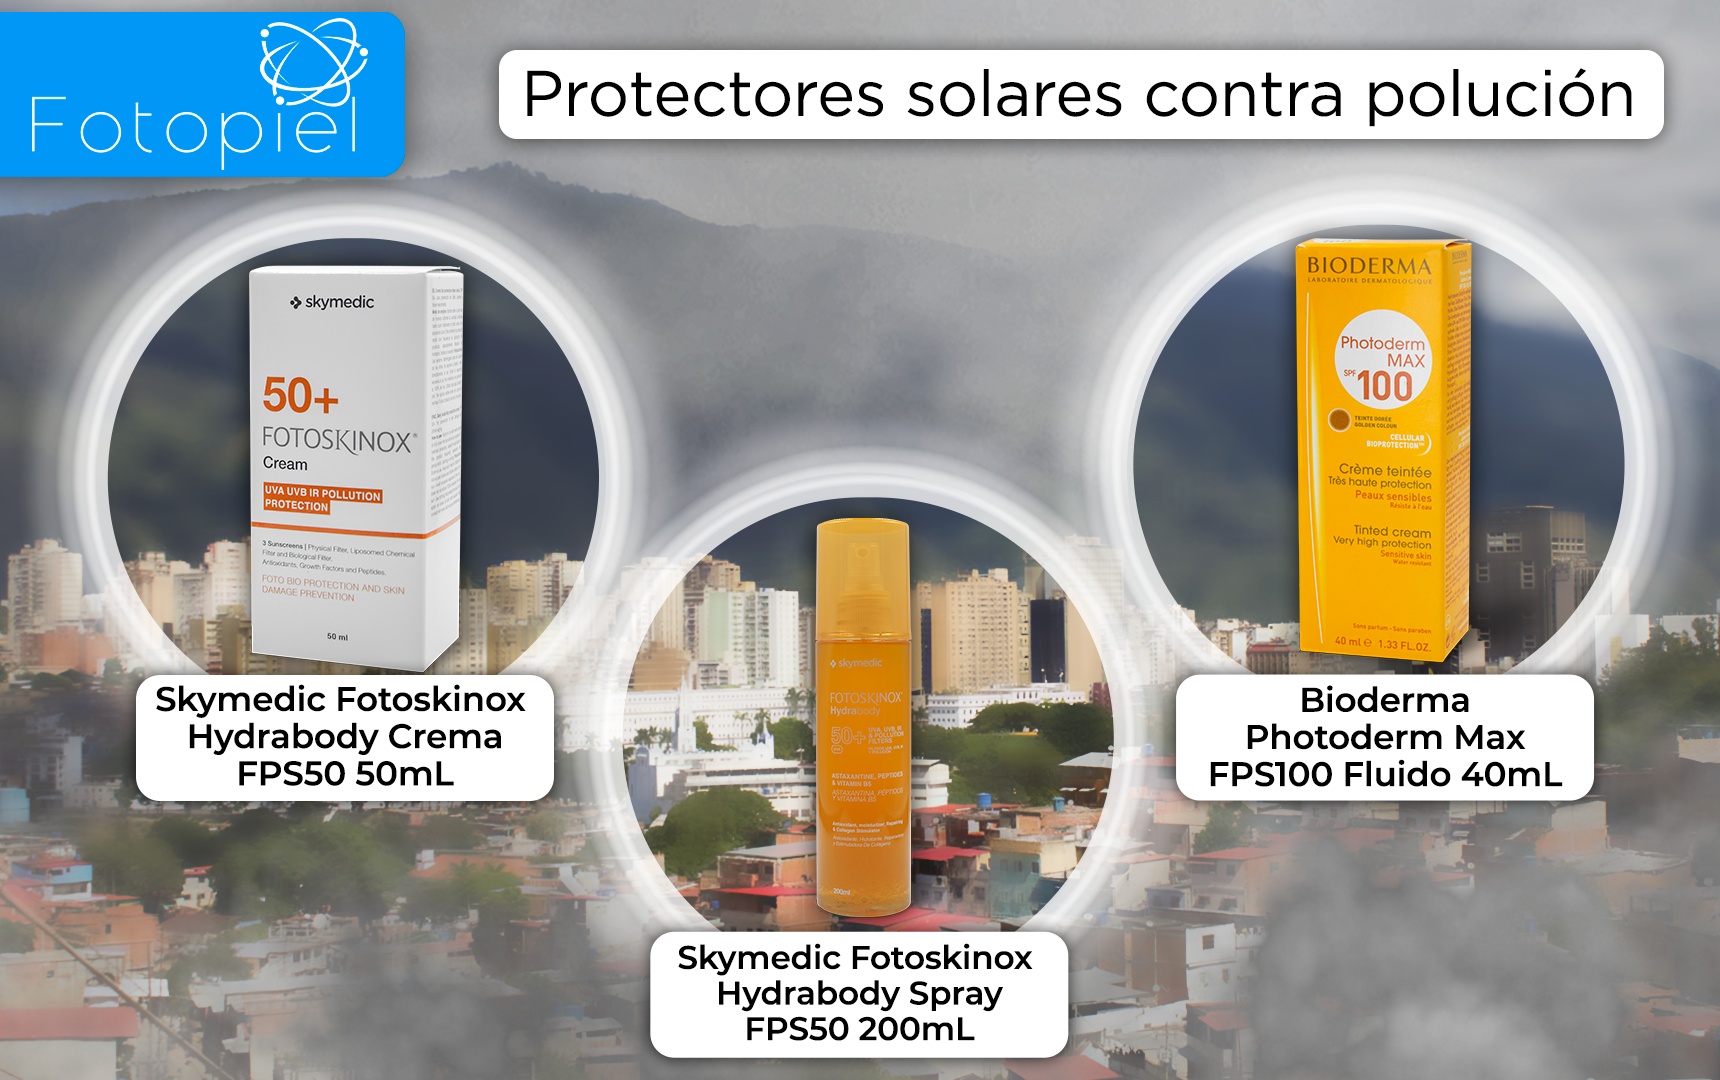 Protectores solares contra polución